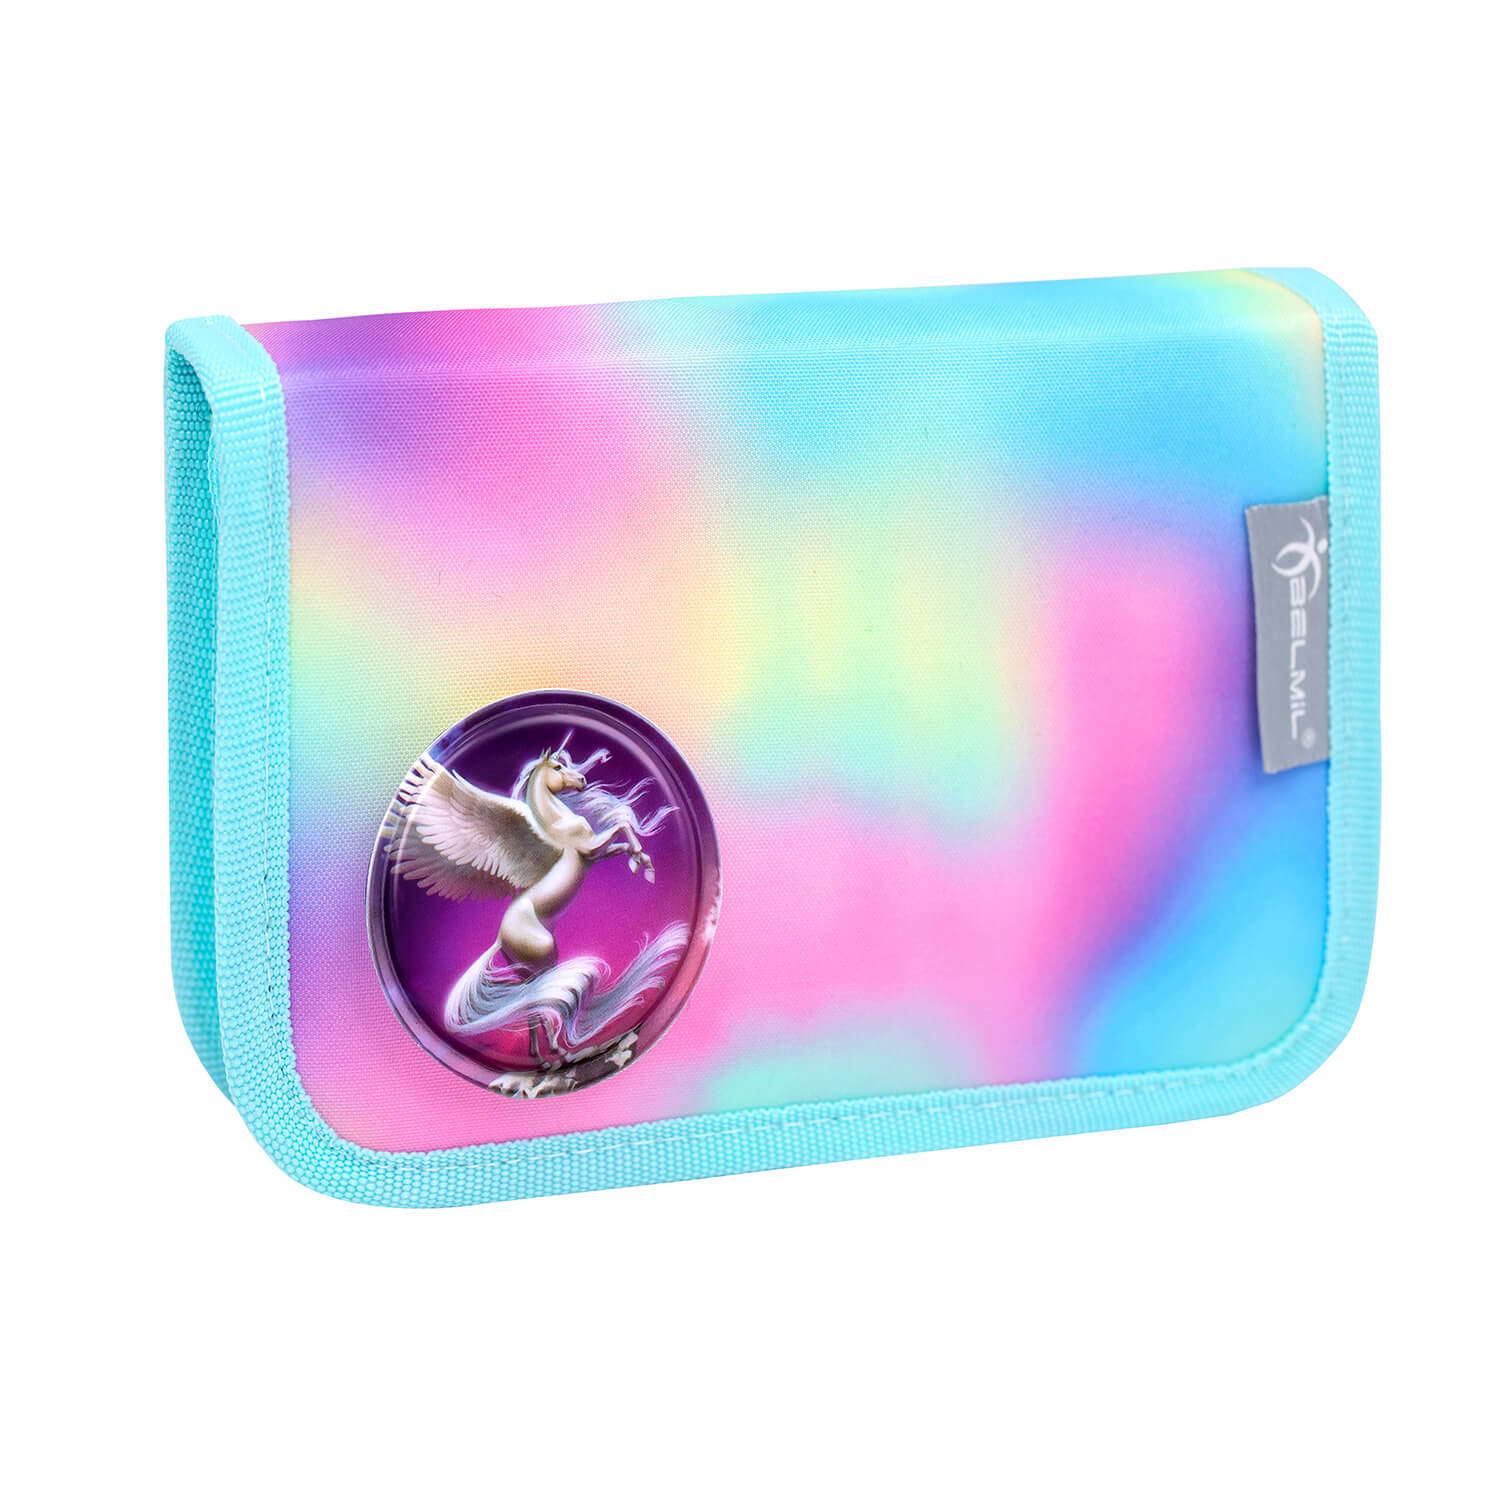 Motion Rainbow Color schoolbag set 6 pcs